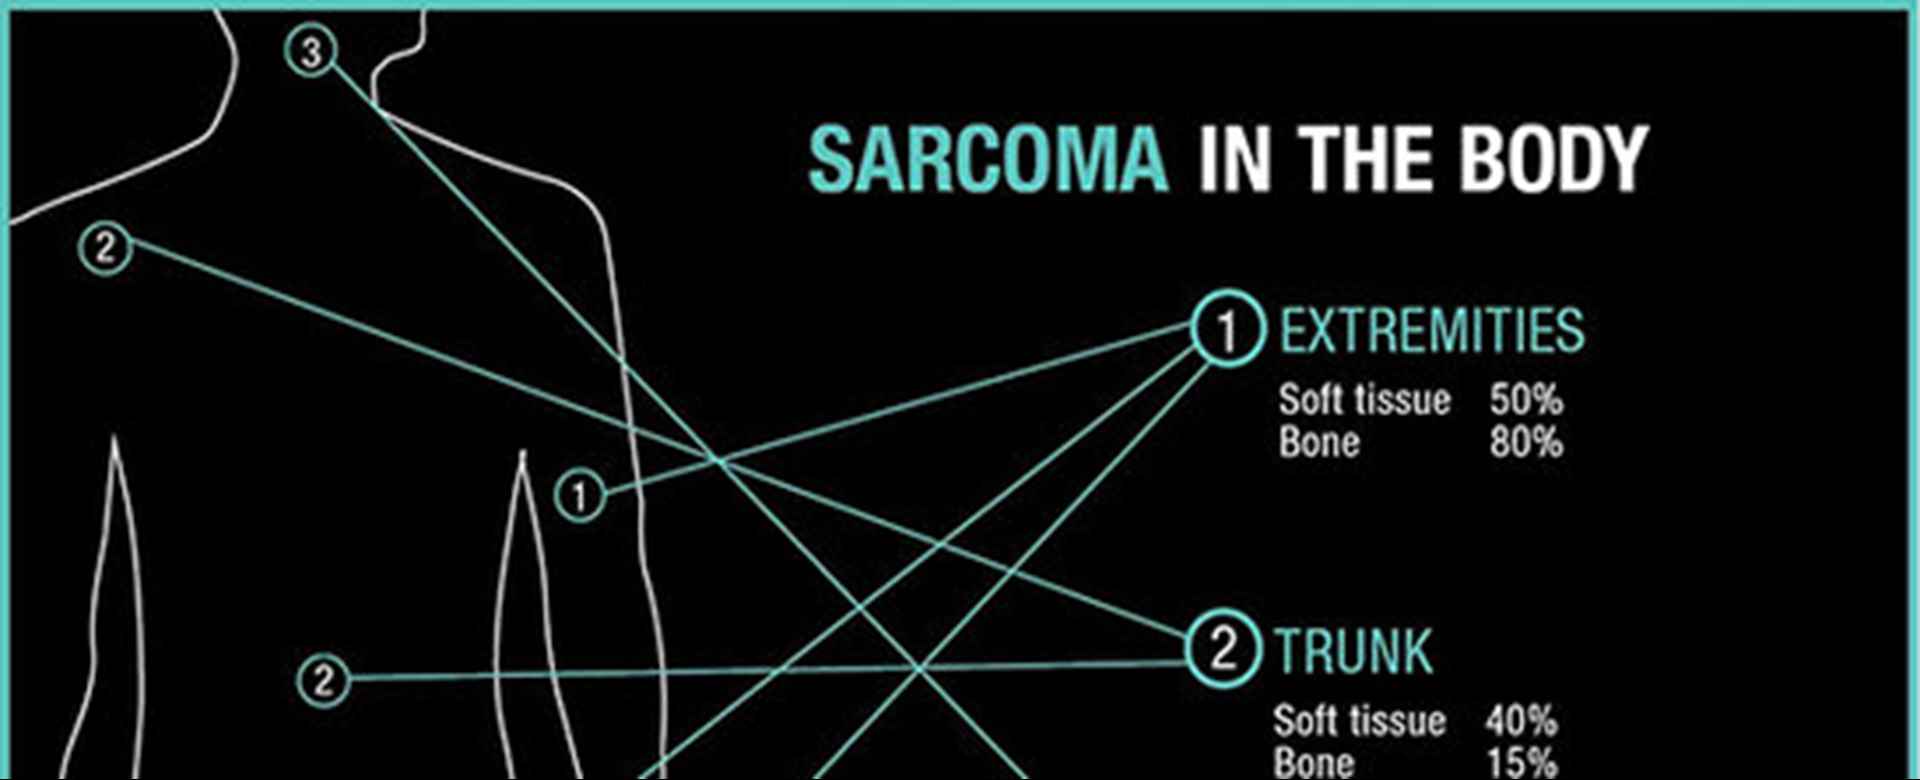 Sarcoma Awareness - Overview of Sarcoma